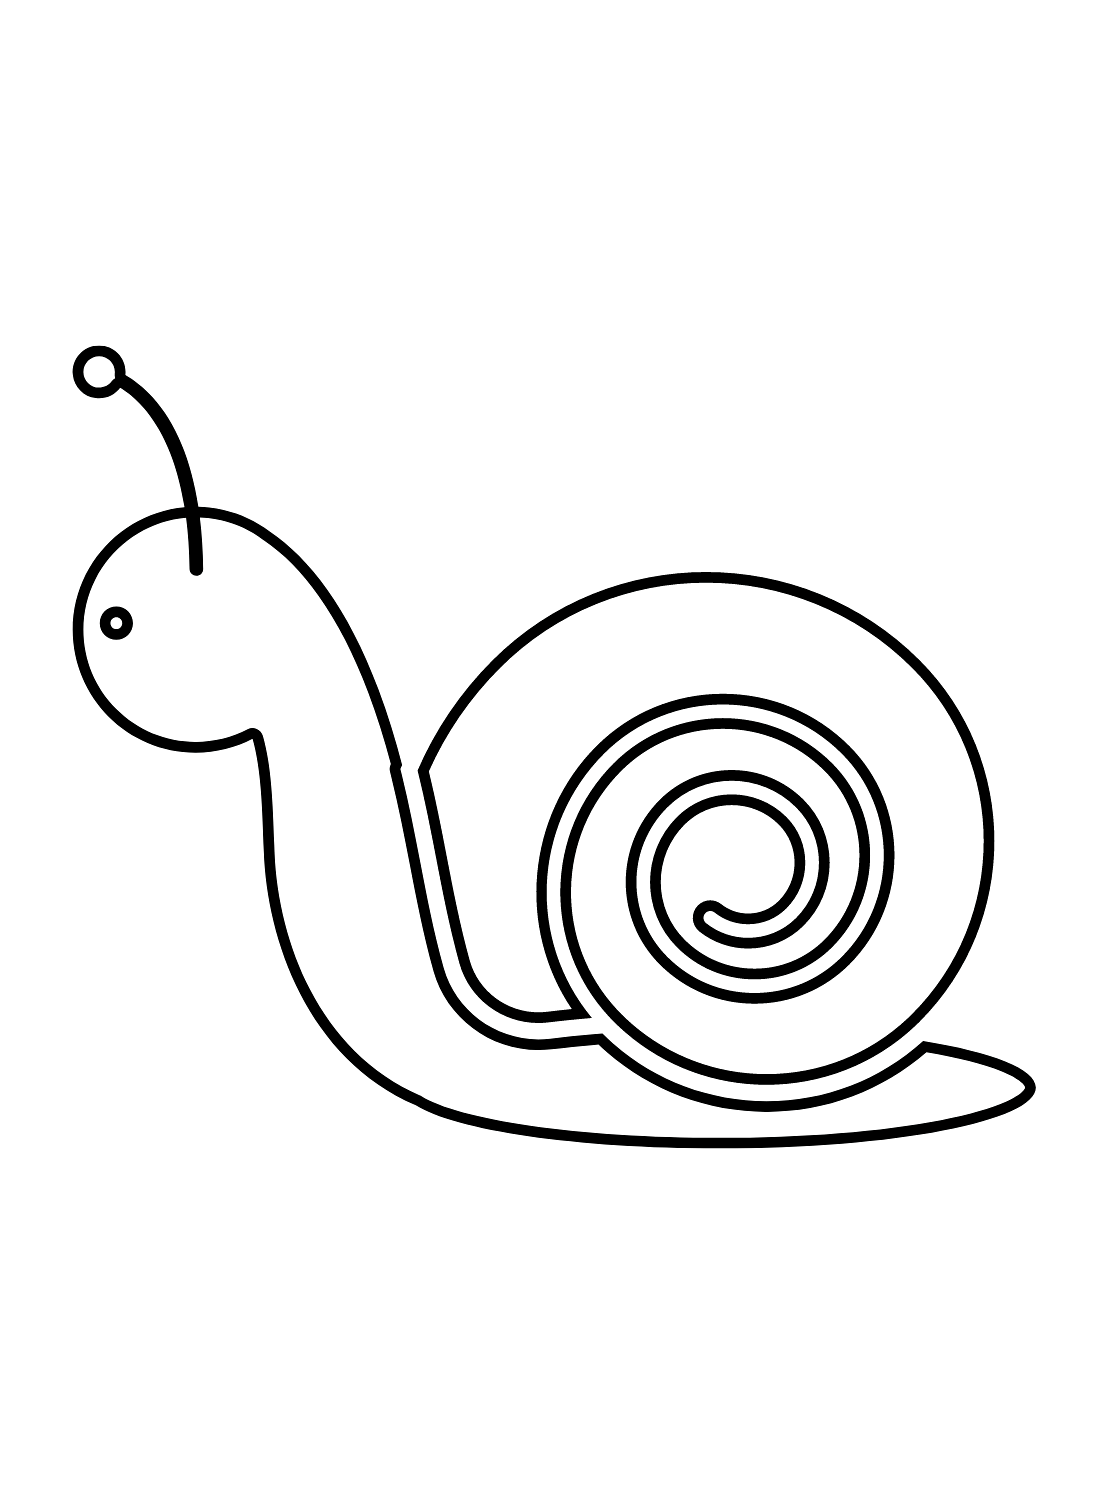 Escargot simple d'escargot